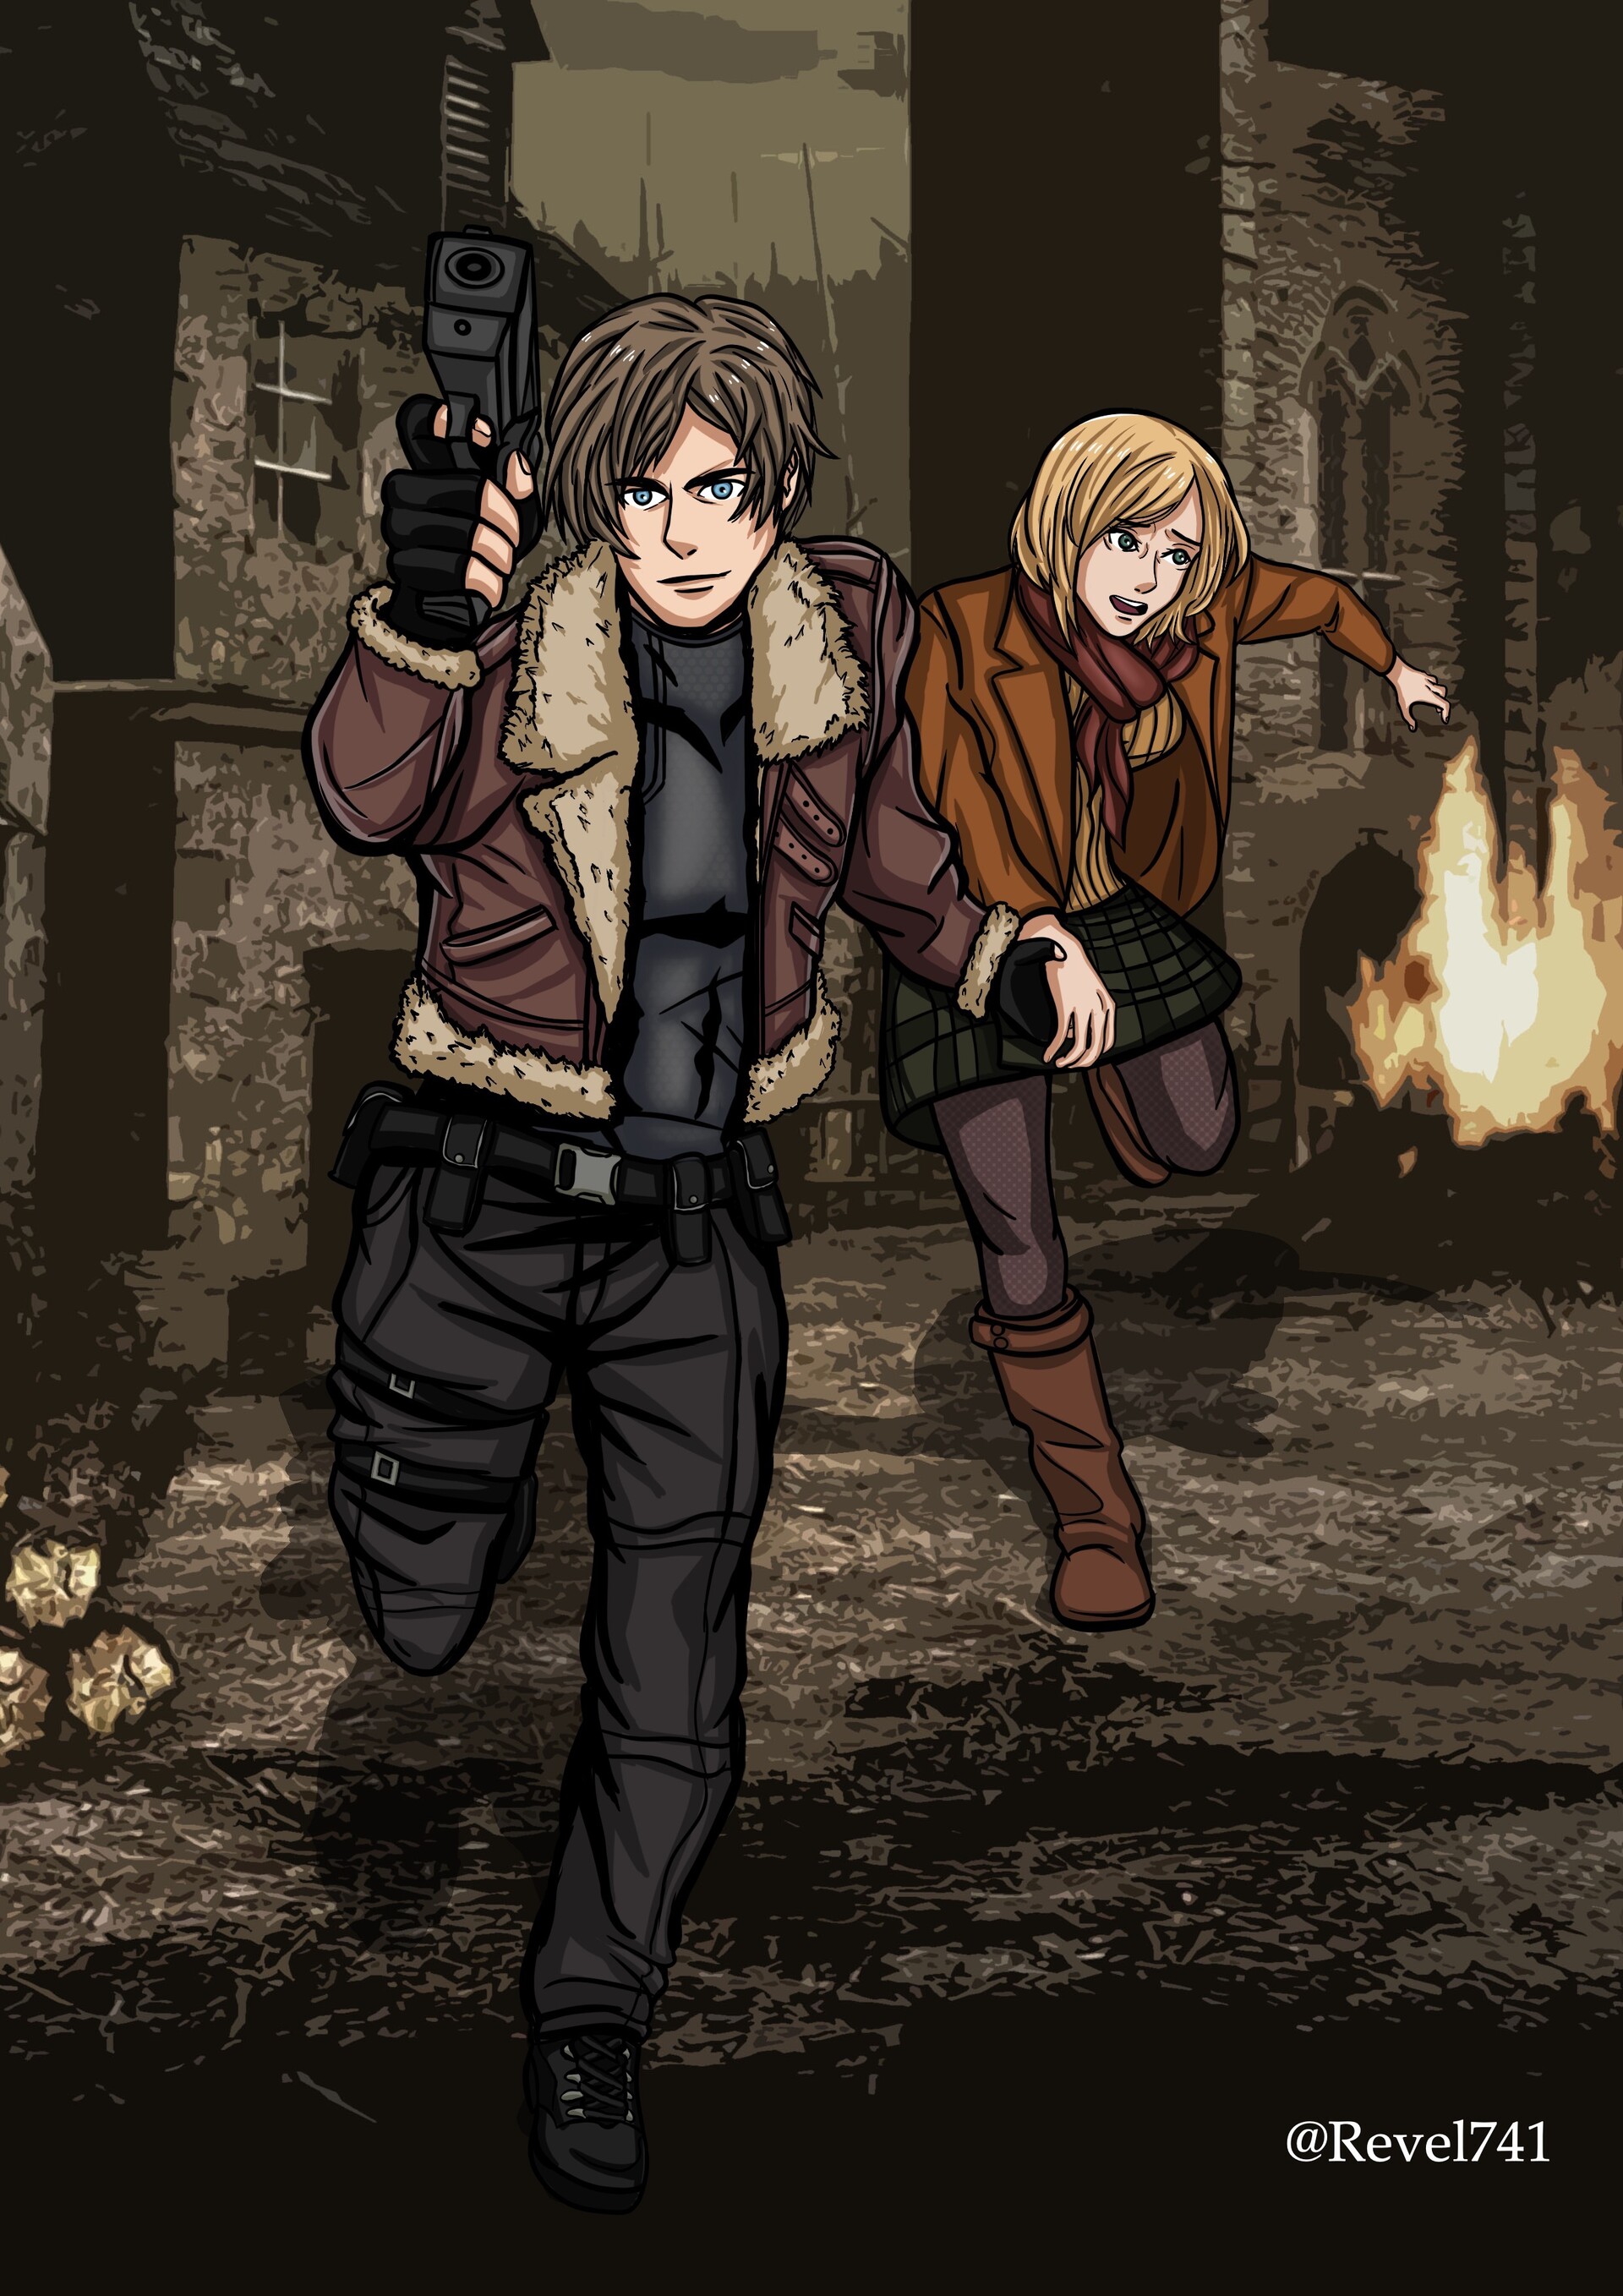 ArtStation - Resident Evil 4 - Overtime with Ashley